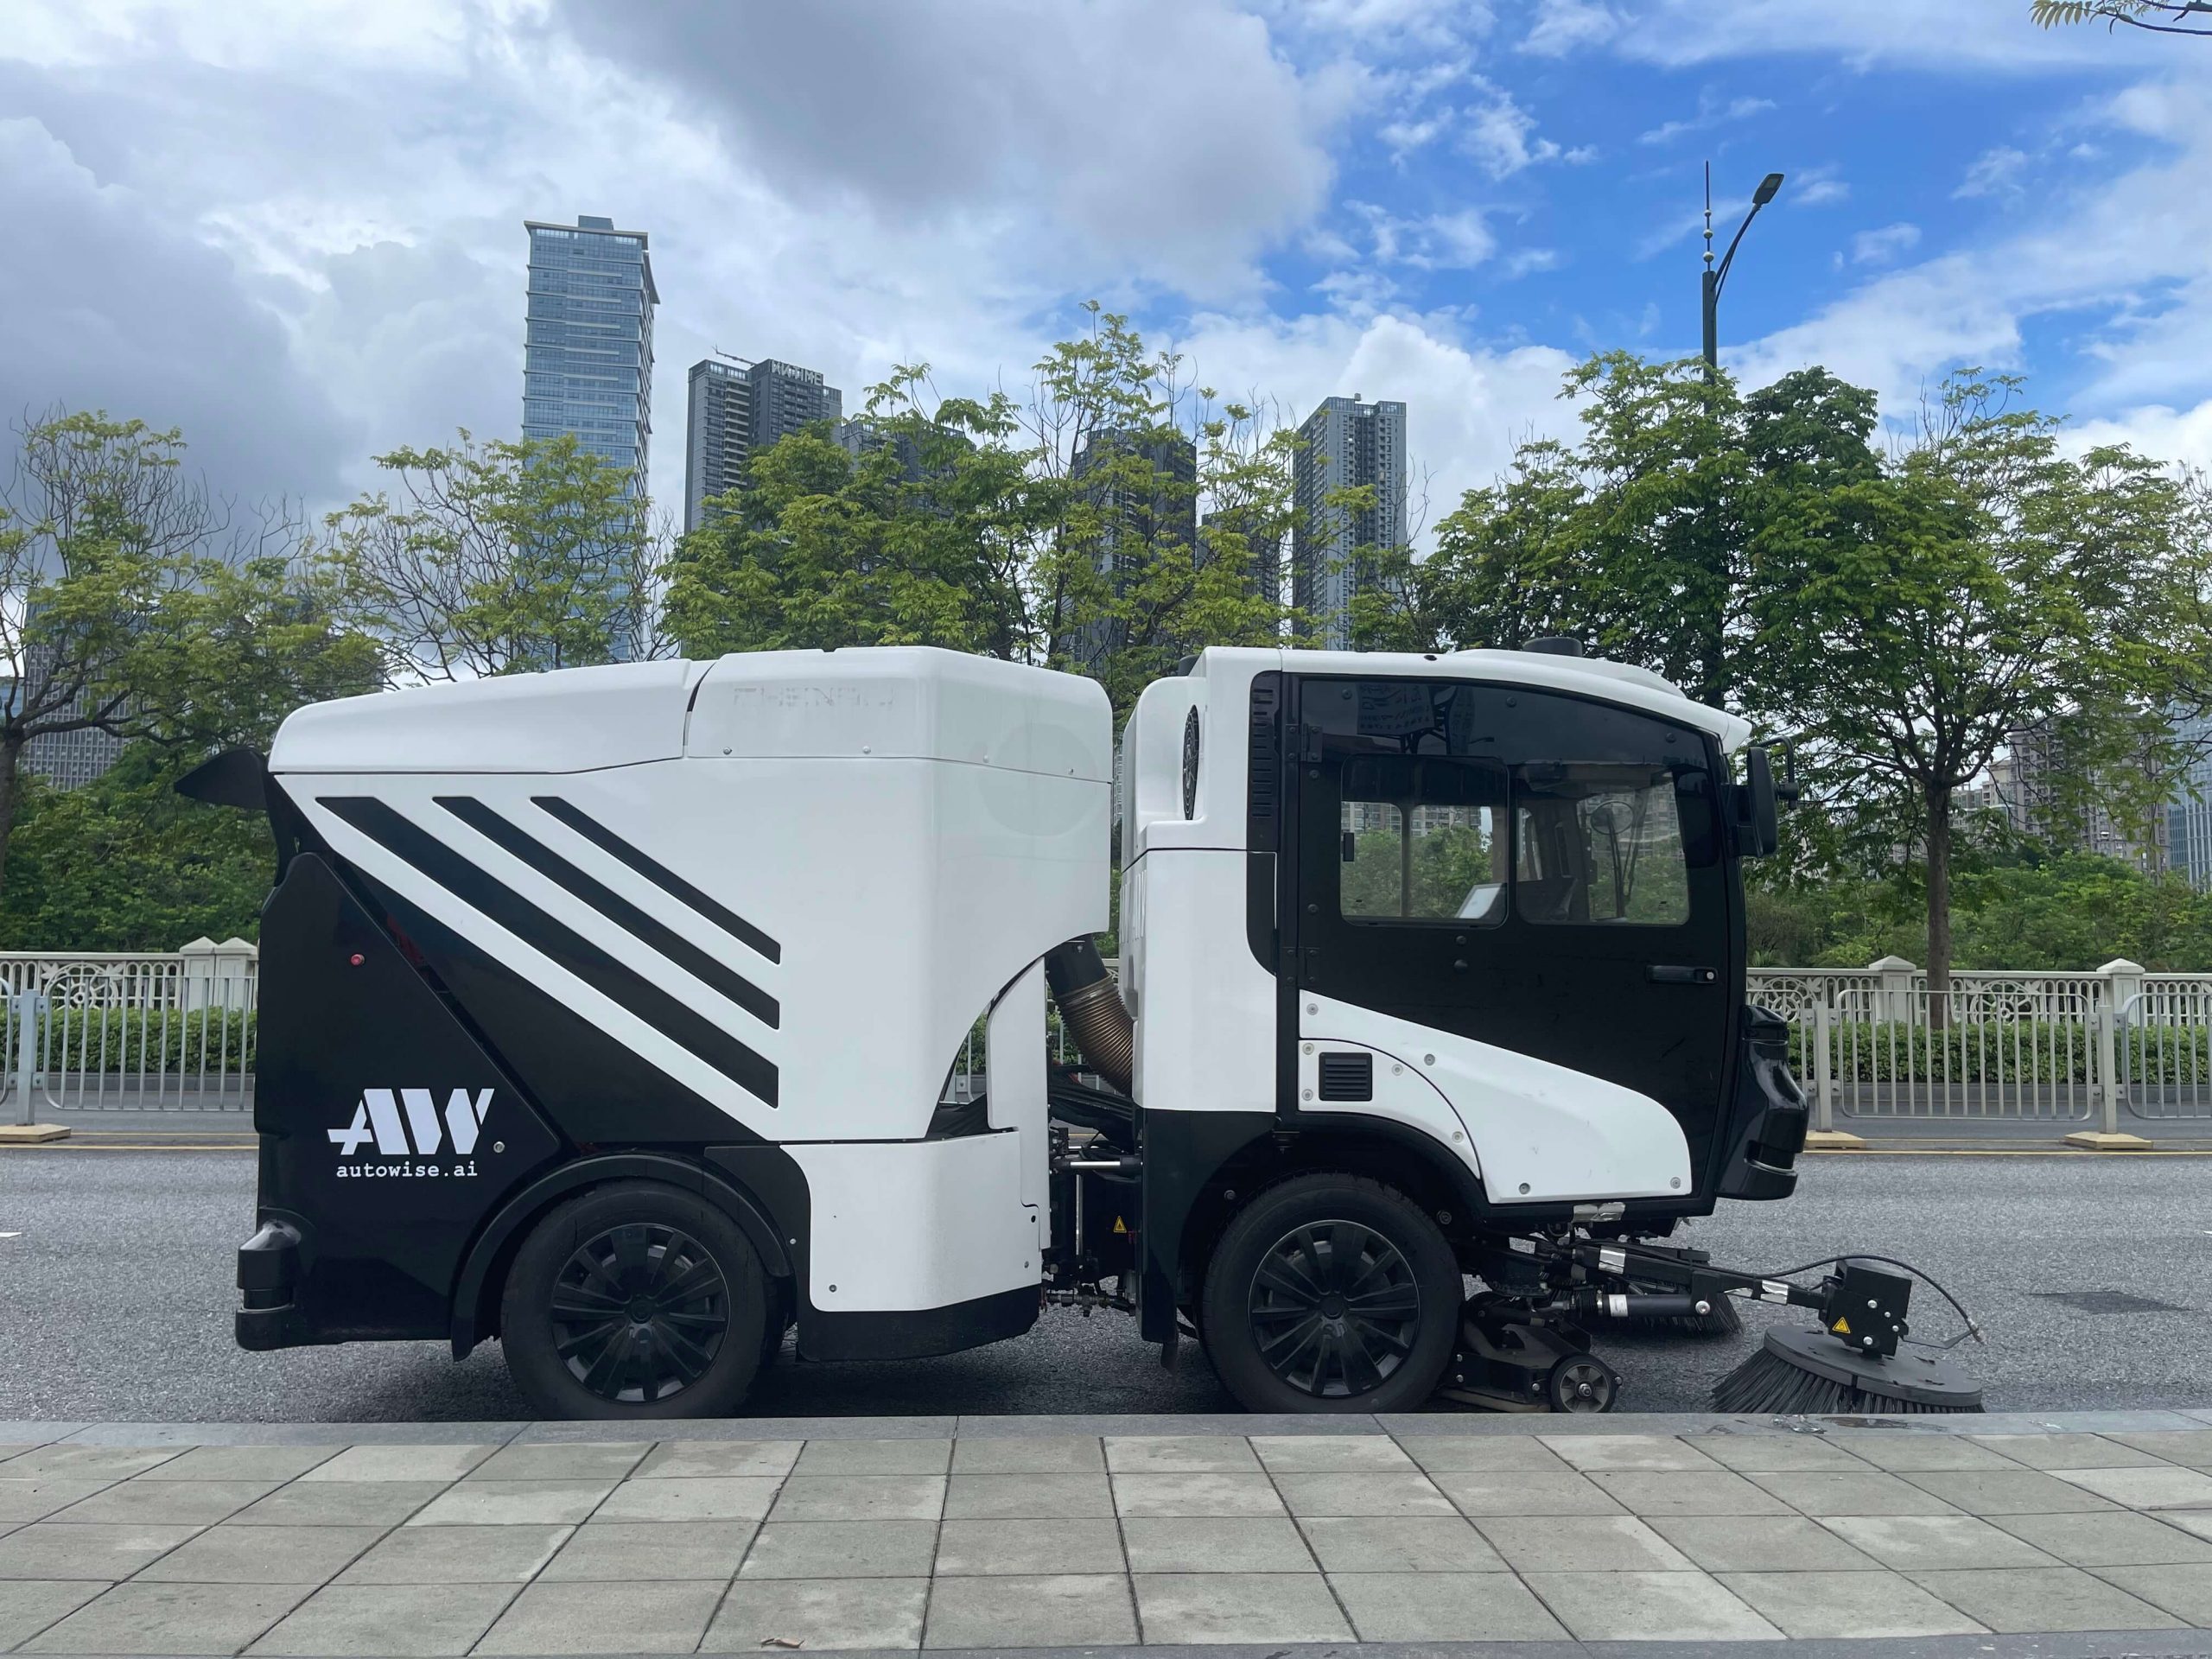 仙途智能Autowise.ai自动驾驶清扫车首次亮相深圳公开道路